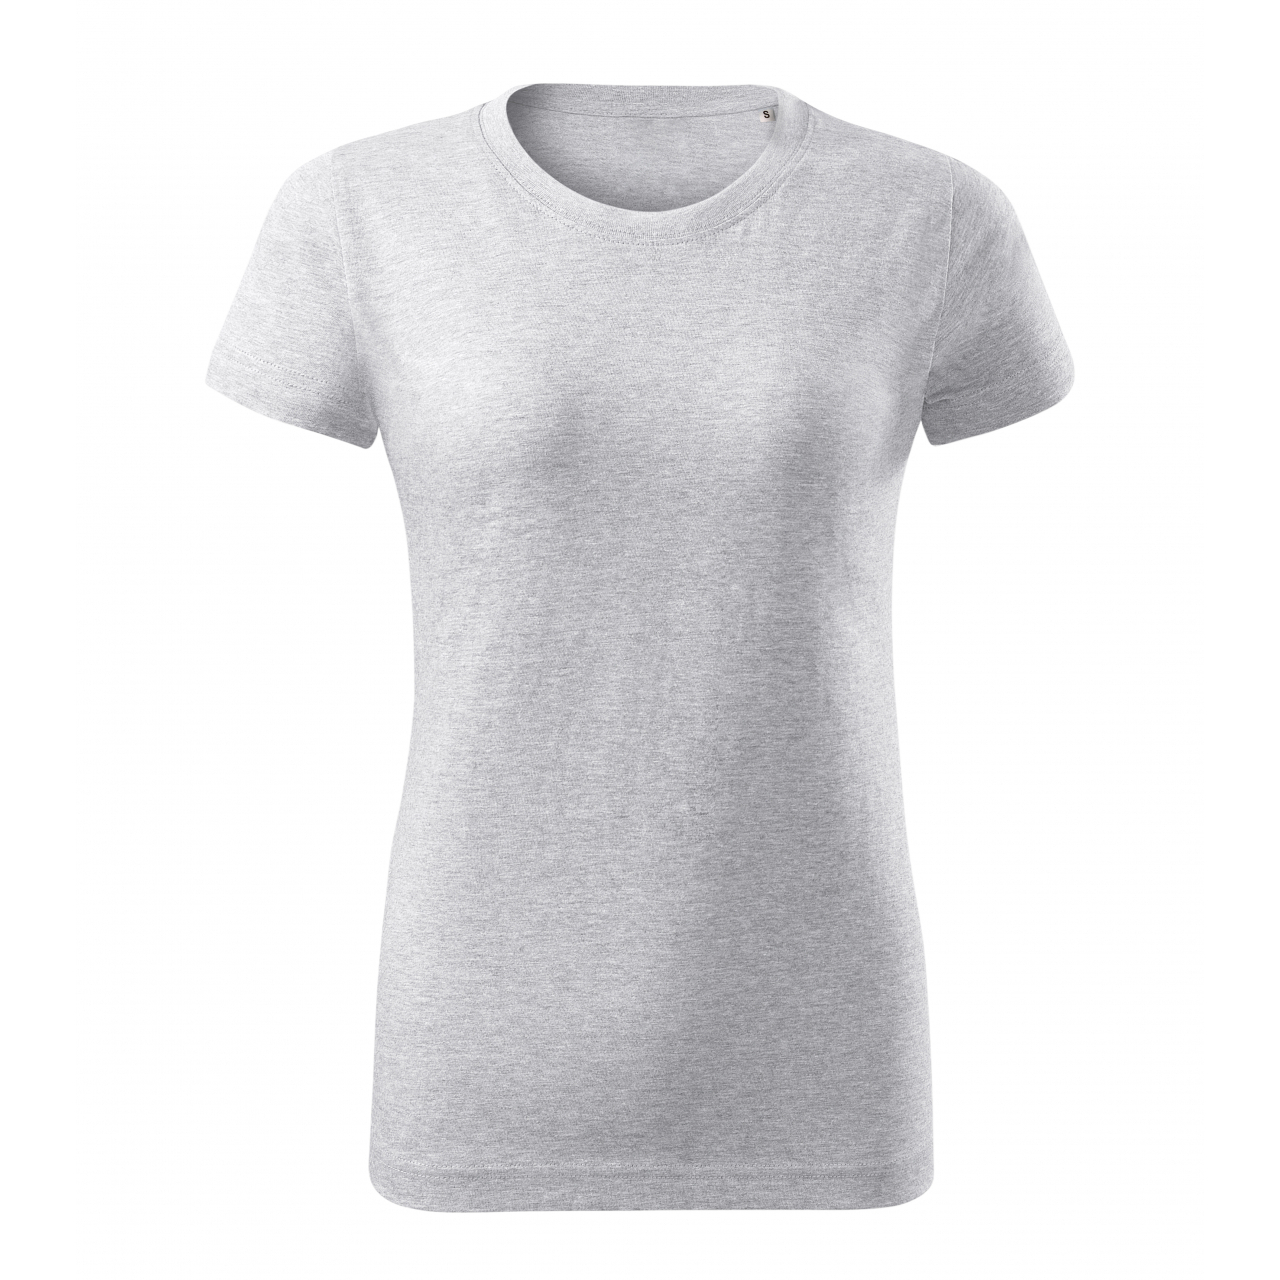 Tričko dámské Malfini Basic Free - světle šedé, XL